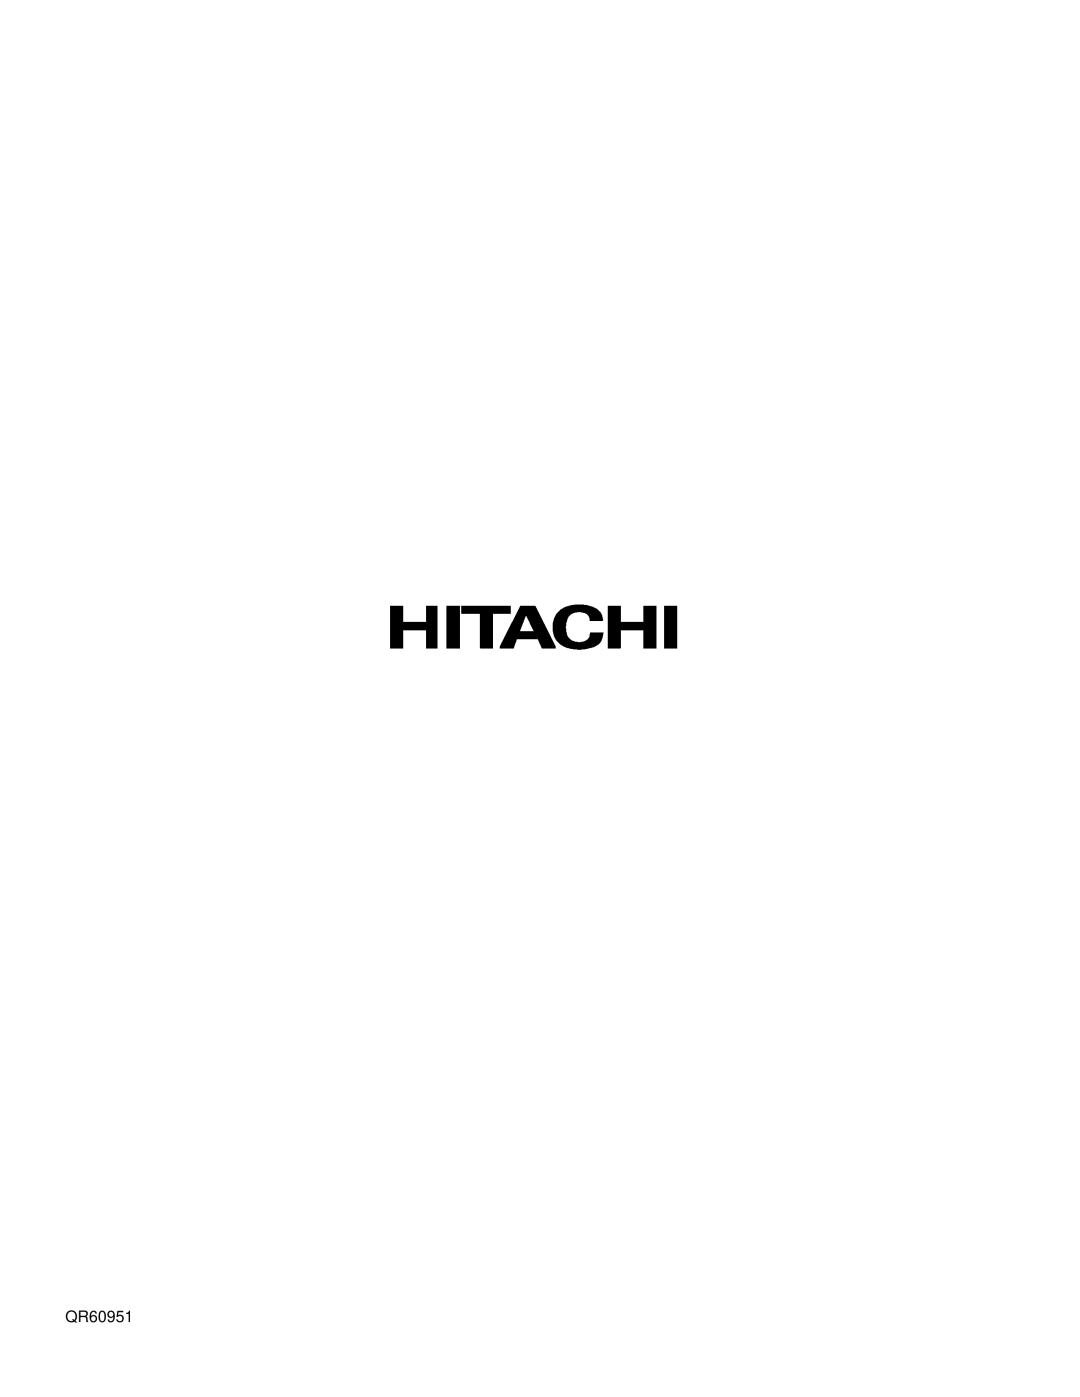 Hitachi 42HDX61, 55HDX61 important safety instructions QR60951 